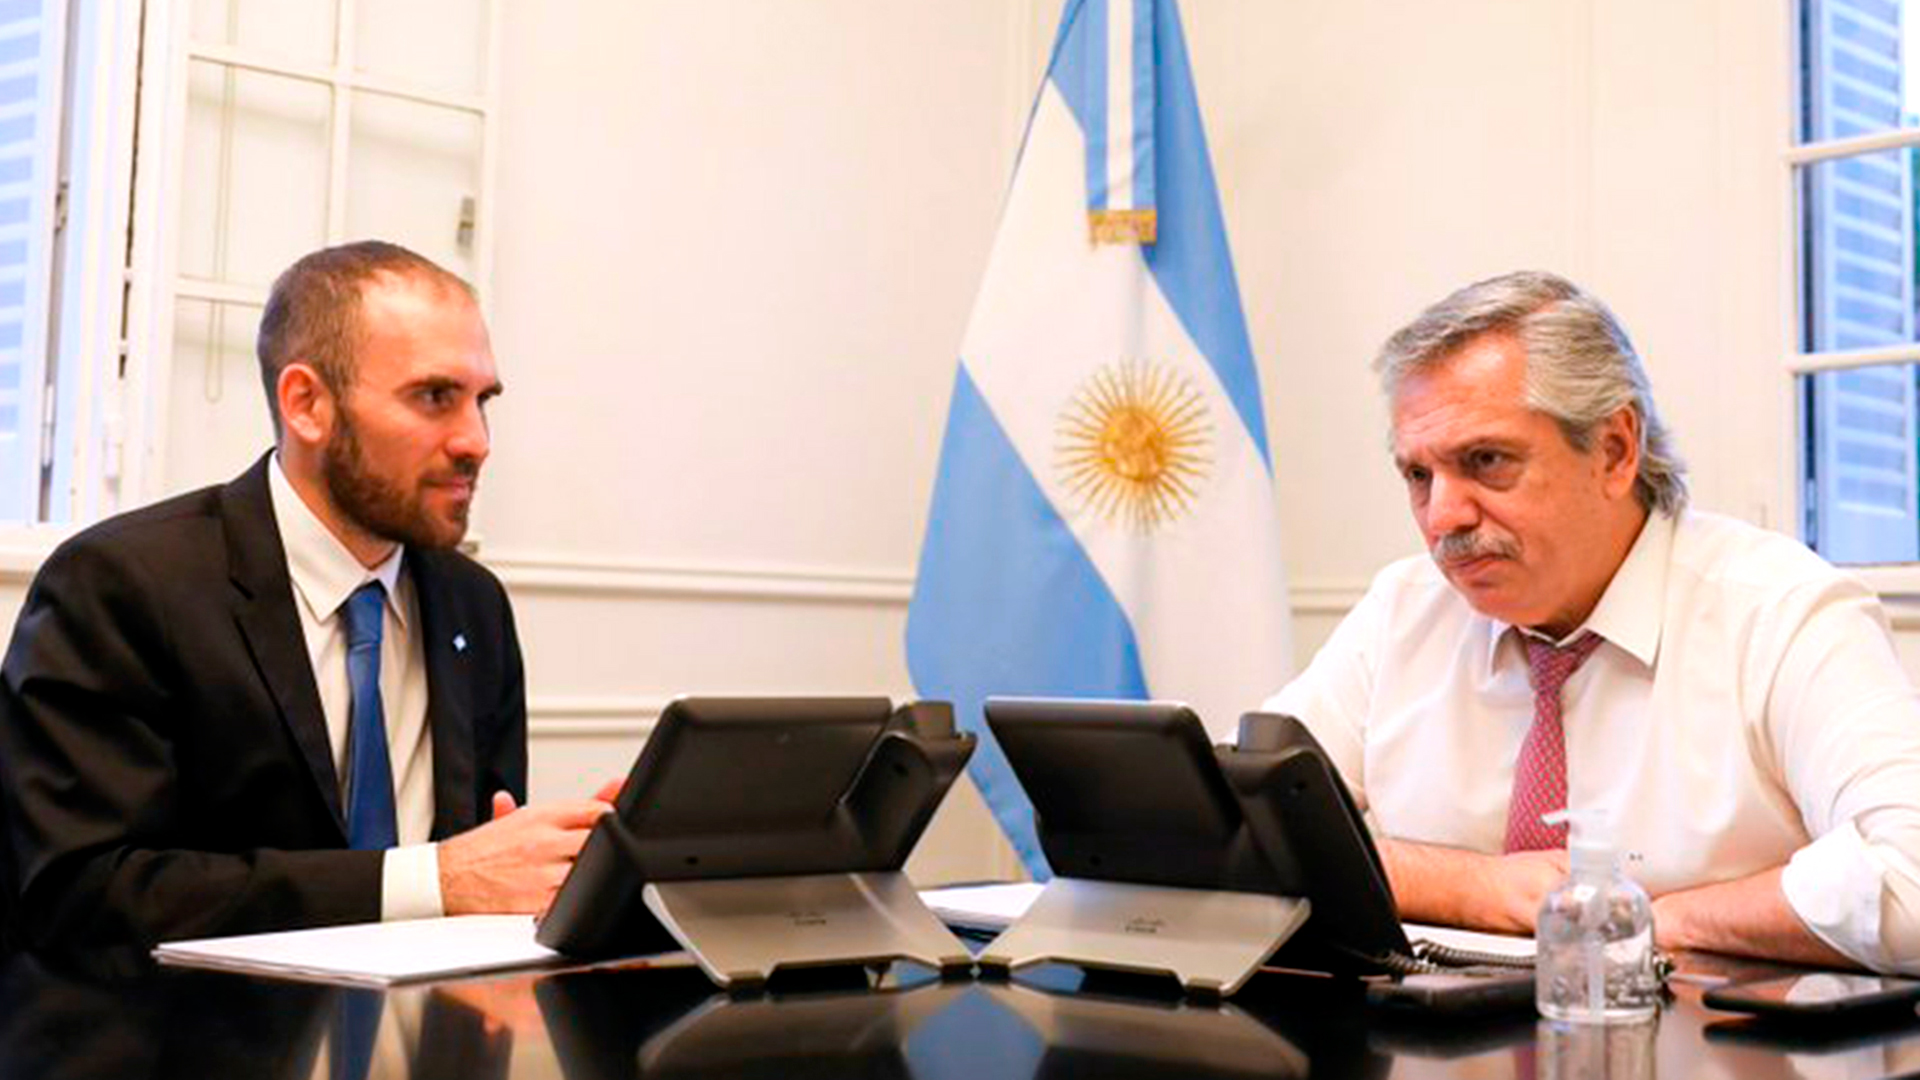 Foto de archivo: el ministro de Economía Martín Guzmán junto al presidente Alberto Fernández durante una reunión.